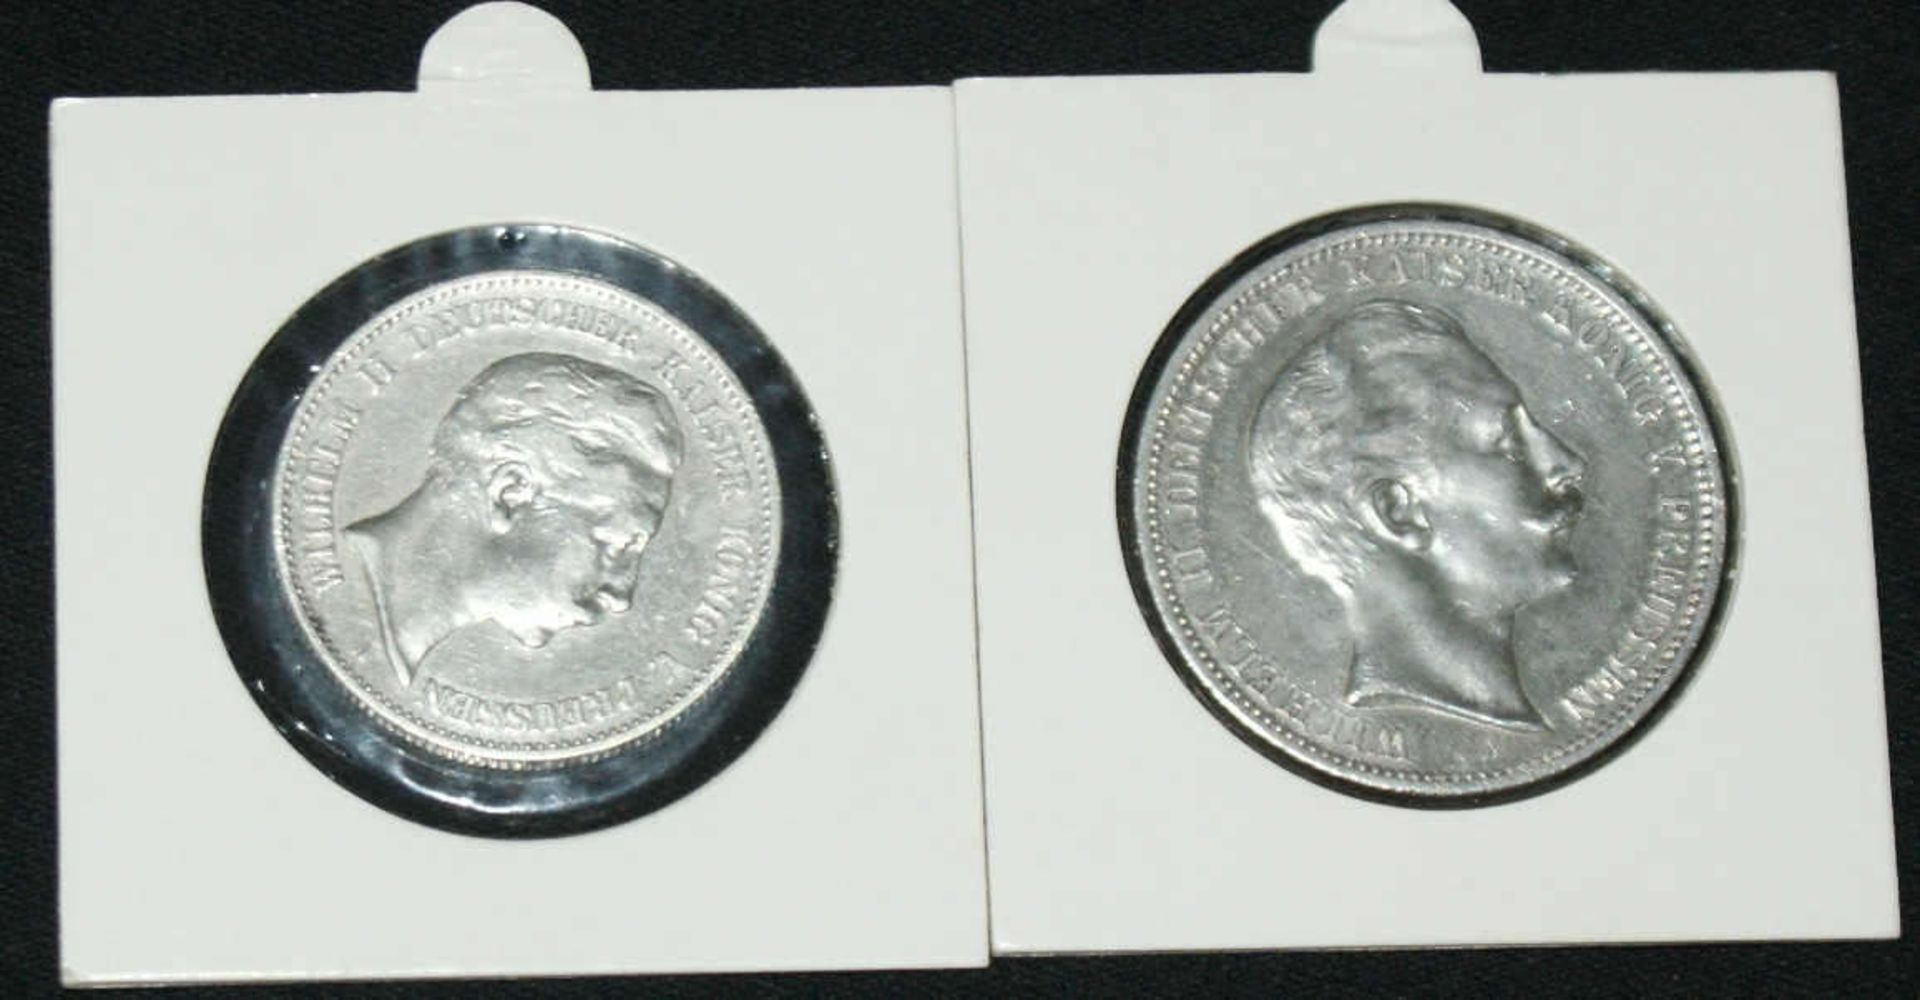 2 Münzen, Kaiserreich Preußen, 1x 3 Mark 1912, sowie 1x 2 Mark 1898. Erhaltung: vorzüglich-